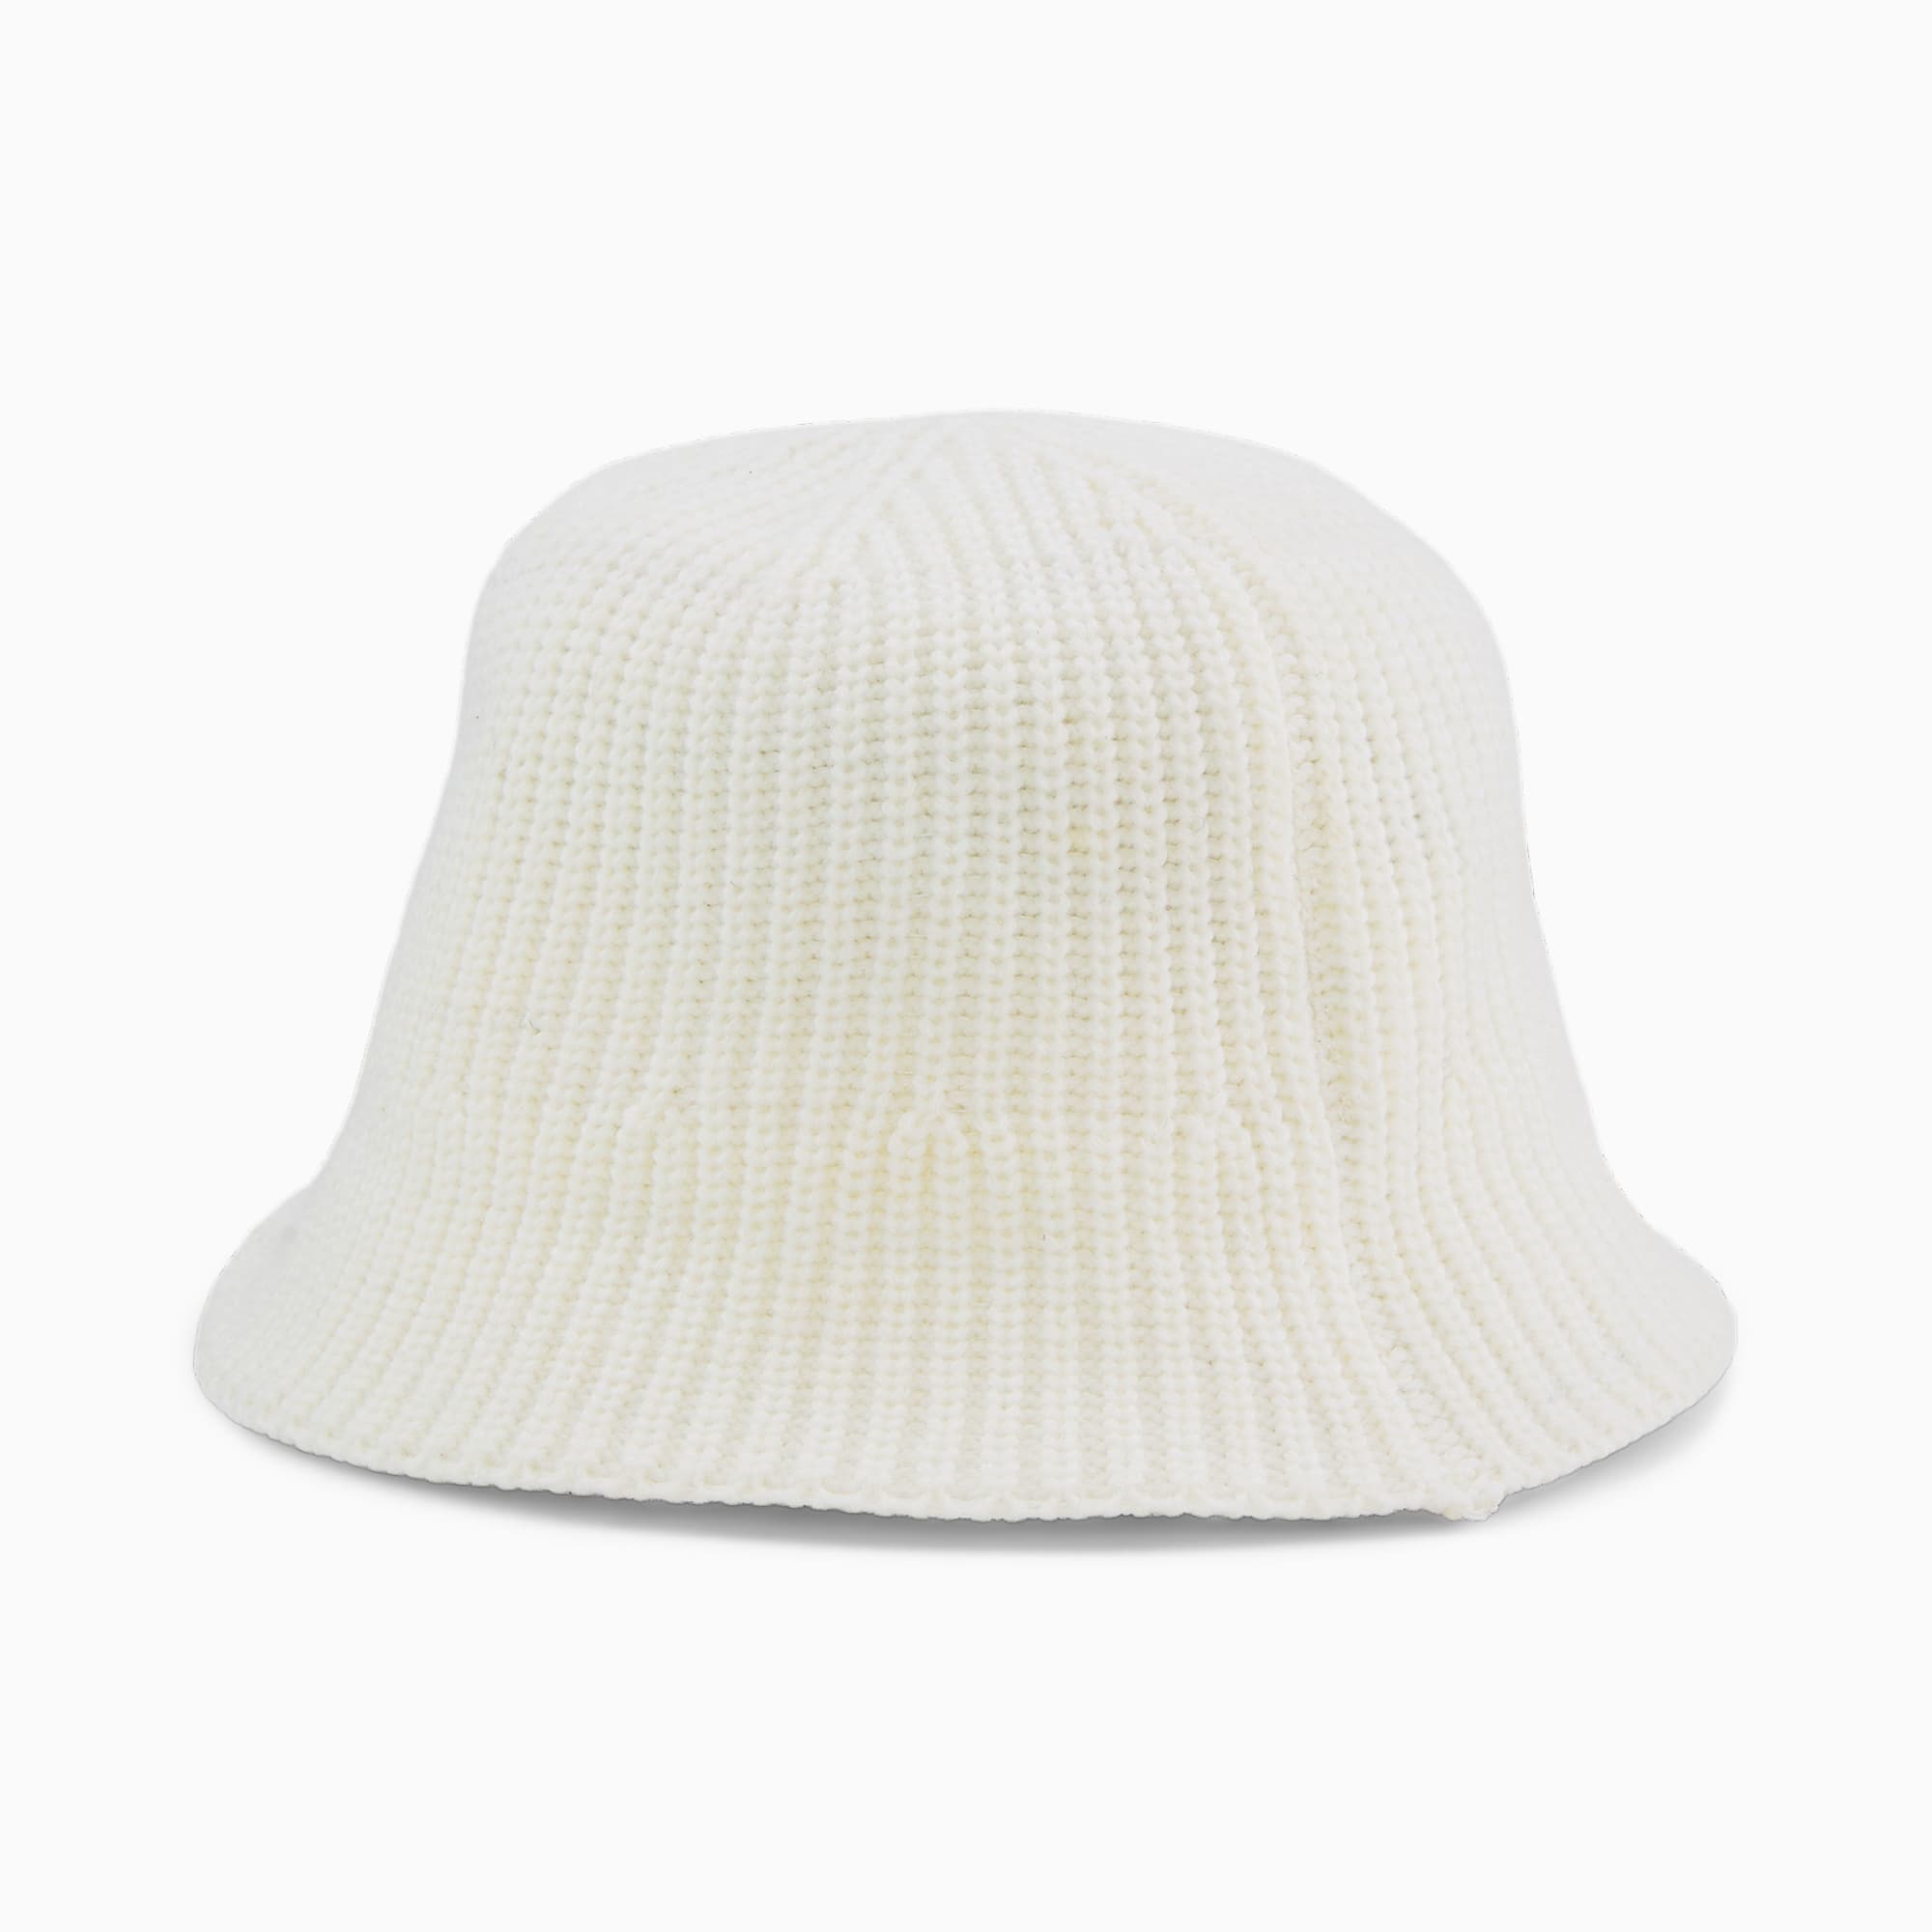 PUMA PRIME Knitted Bucket Hat Für Damen, Weiß, Größe: L/XL, Accessoires